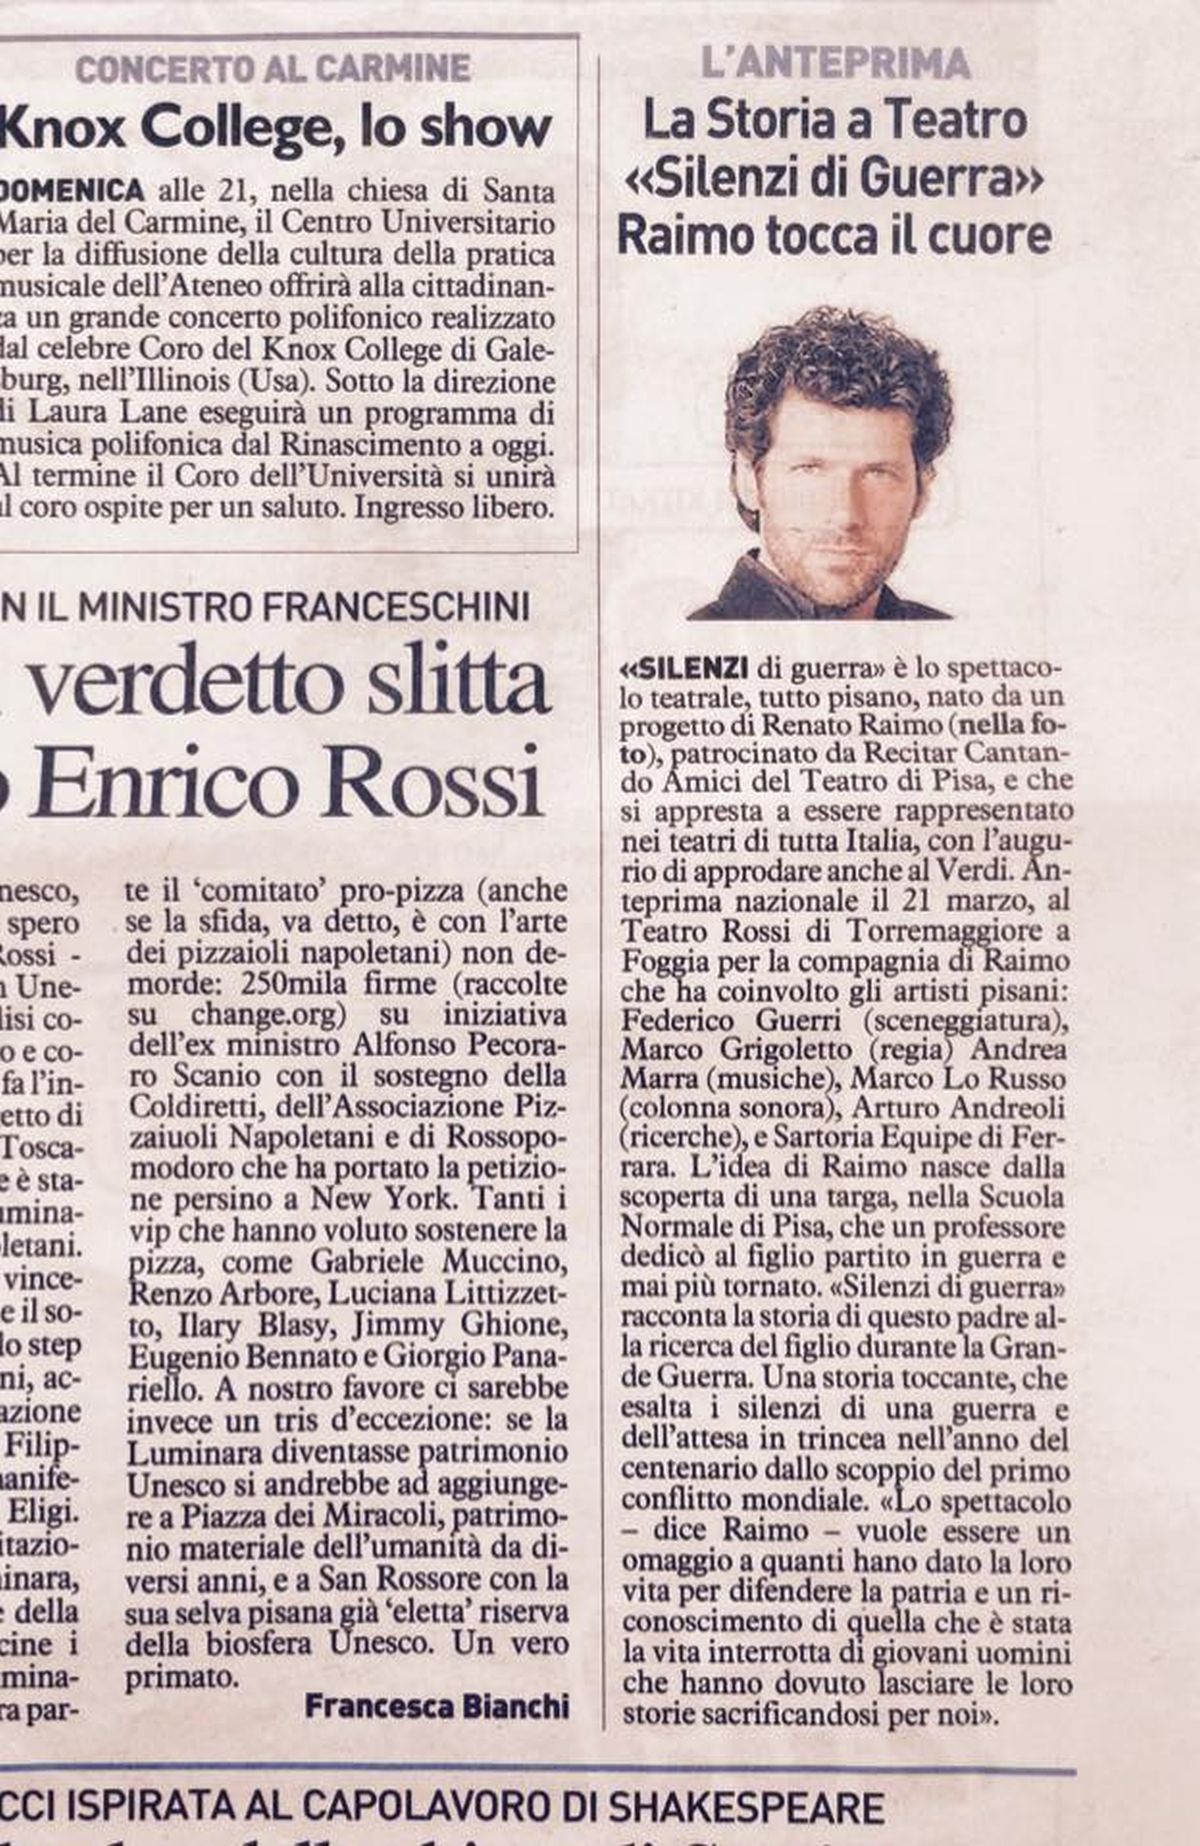 rassegna stampa|3_2015 Renato Raimo